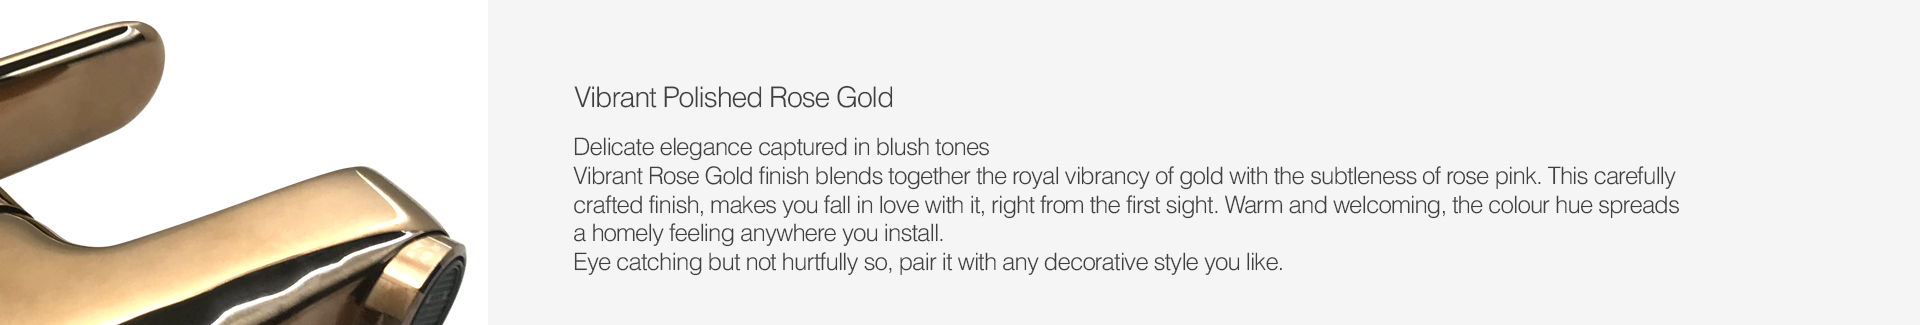 Vibrant Polished Rose Gold